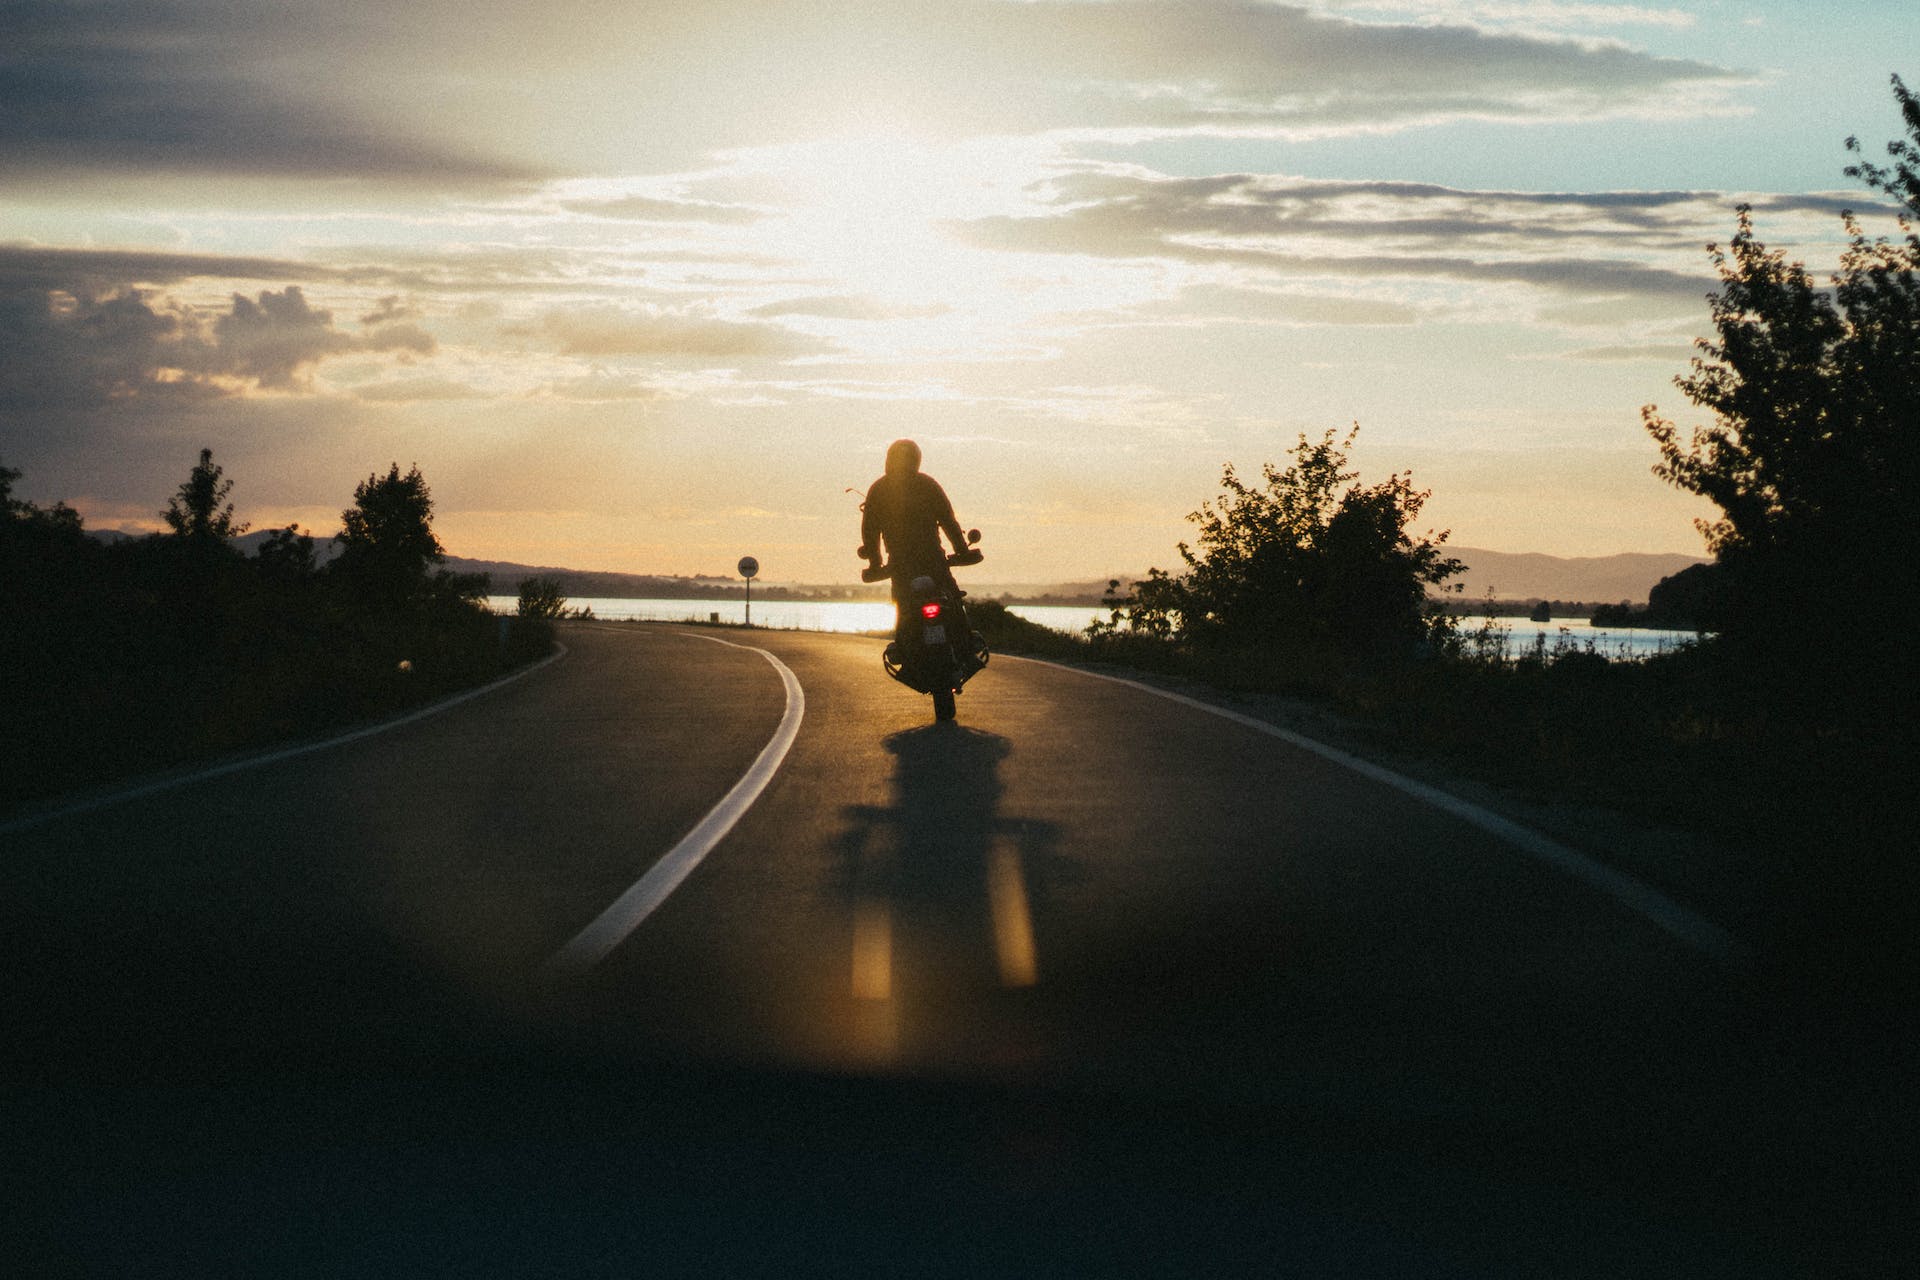 Una persona conduciendo una moto | Fuente: Pexels